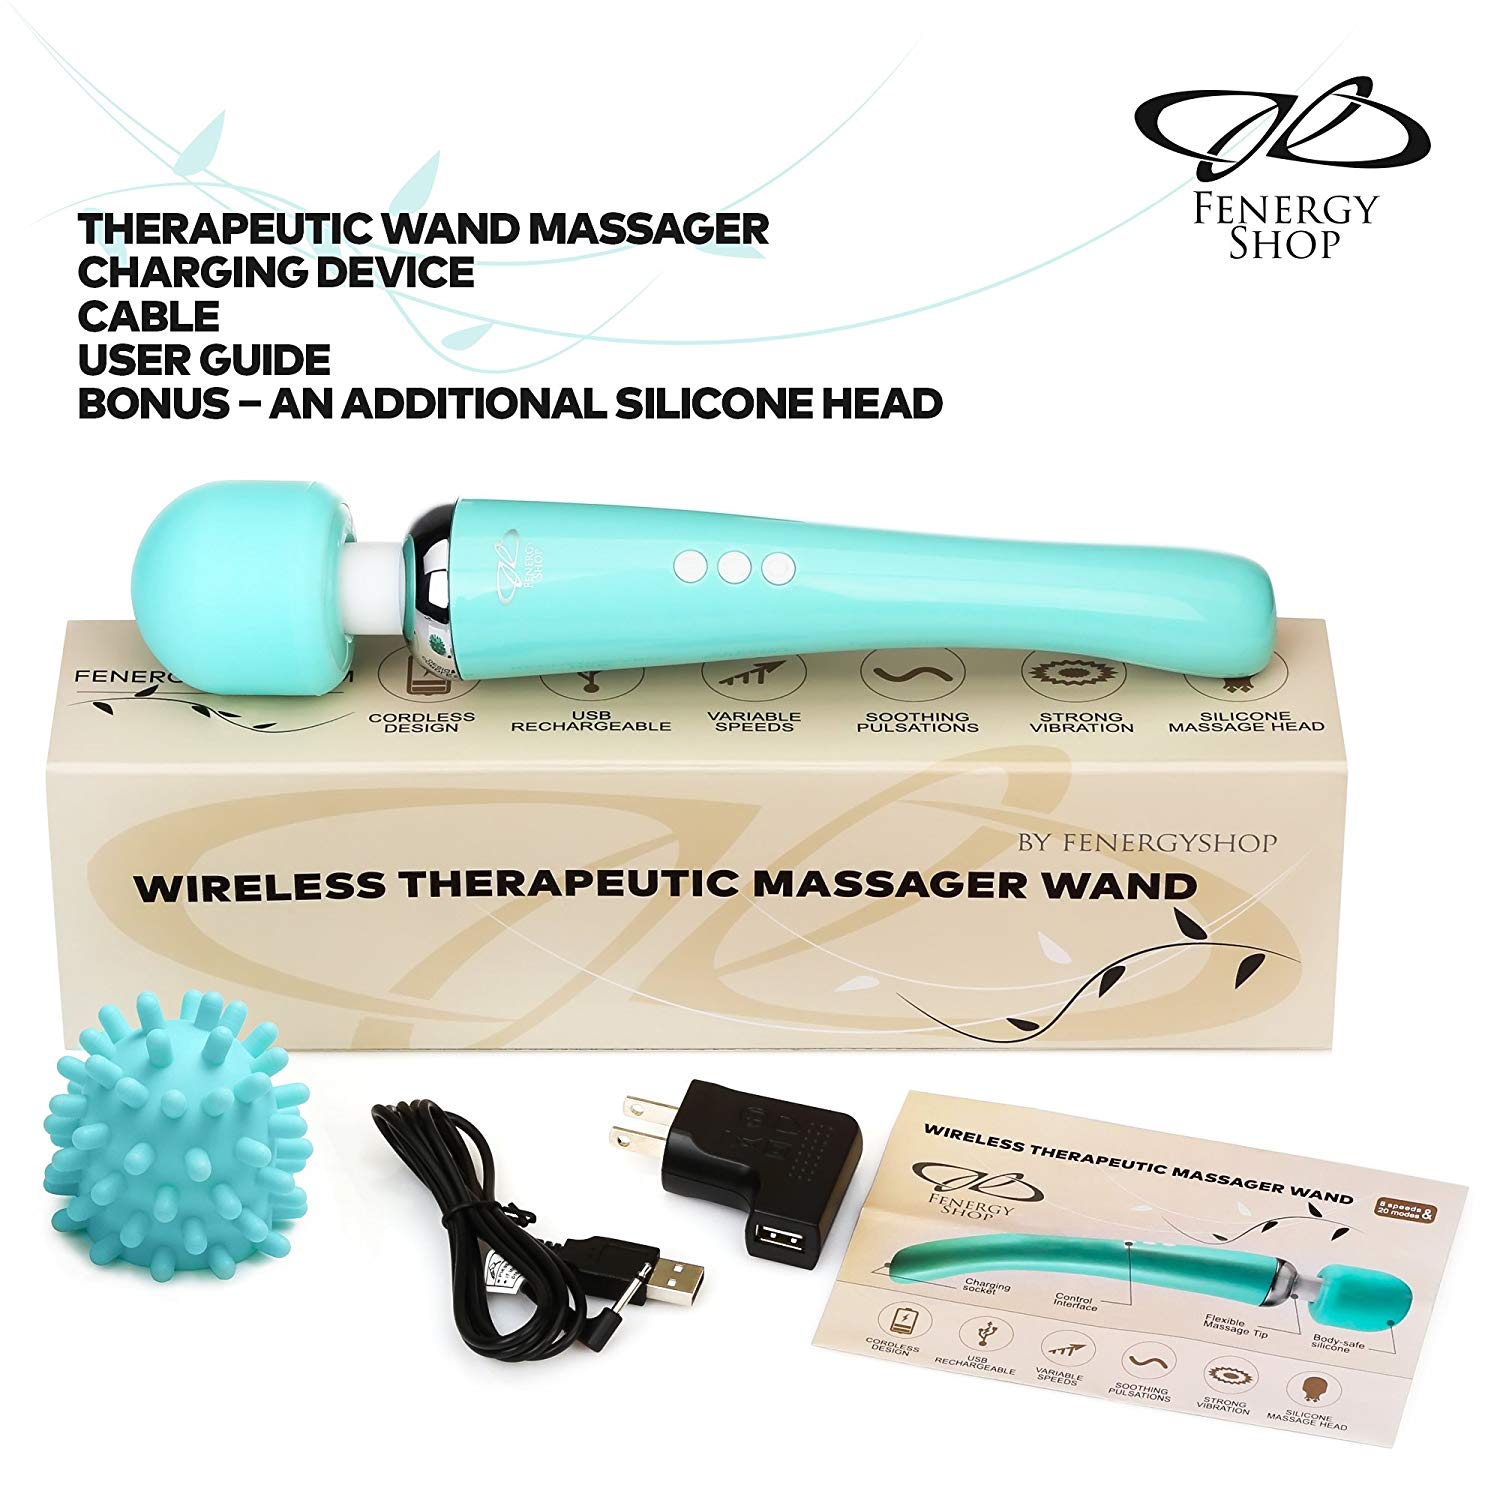 Wireless therapeutic massage